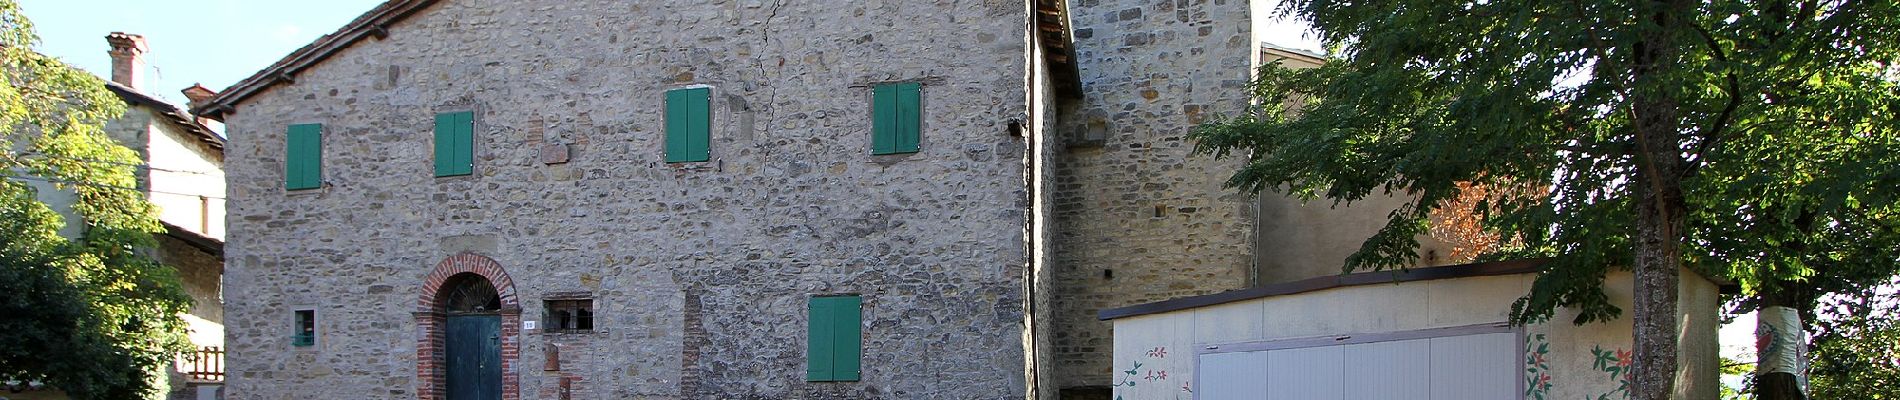 Excursión A pie Castel d'Aiano - IT-150 - Photo